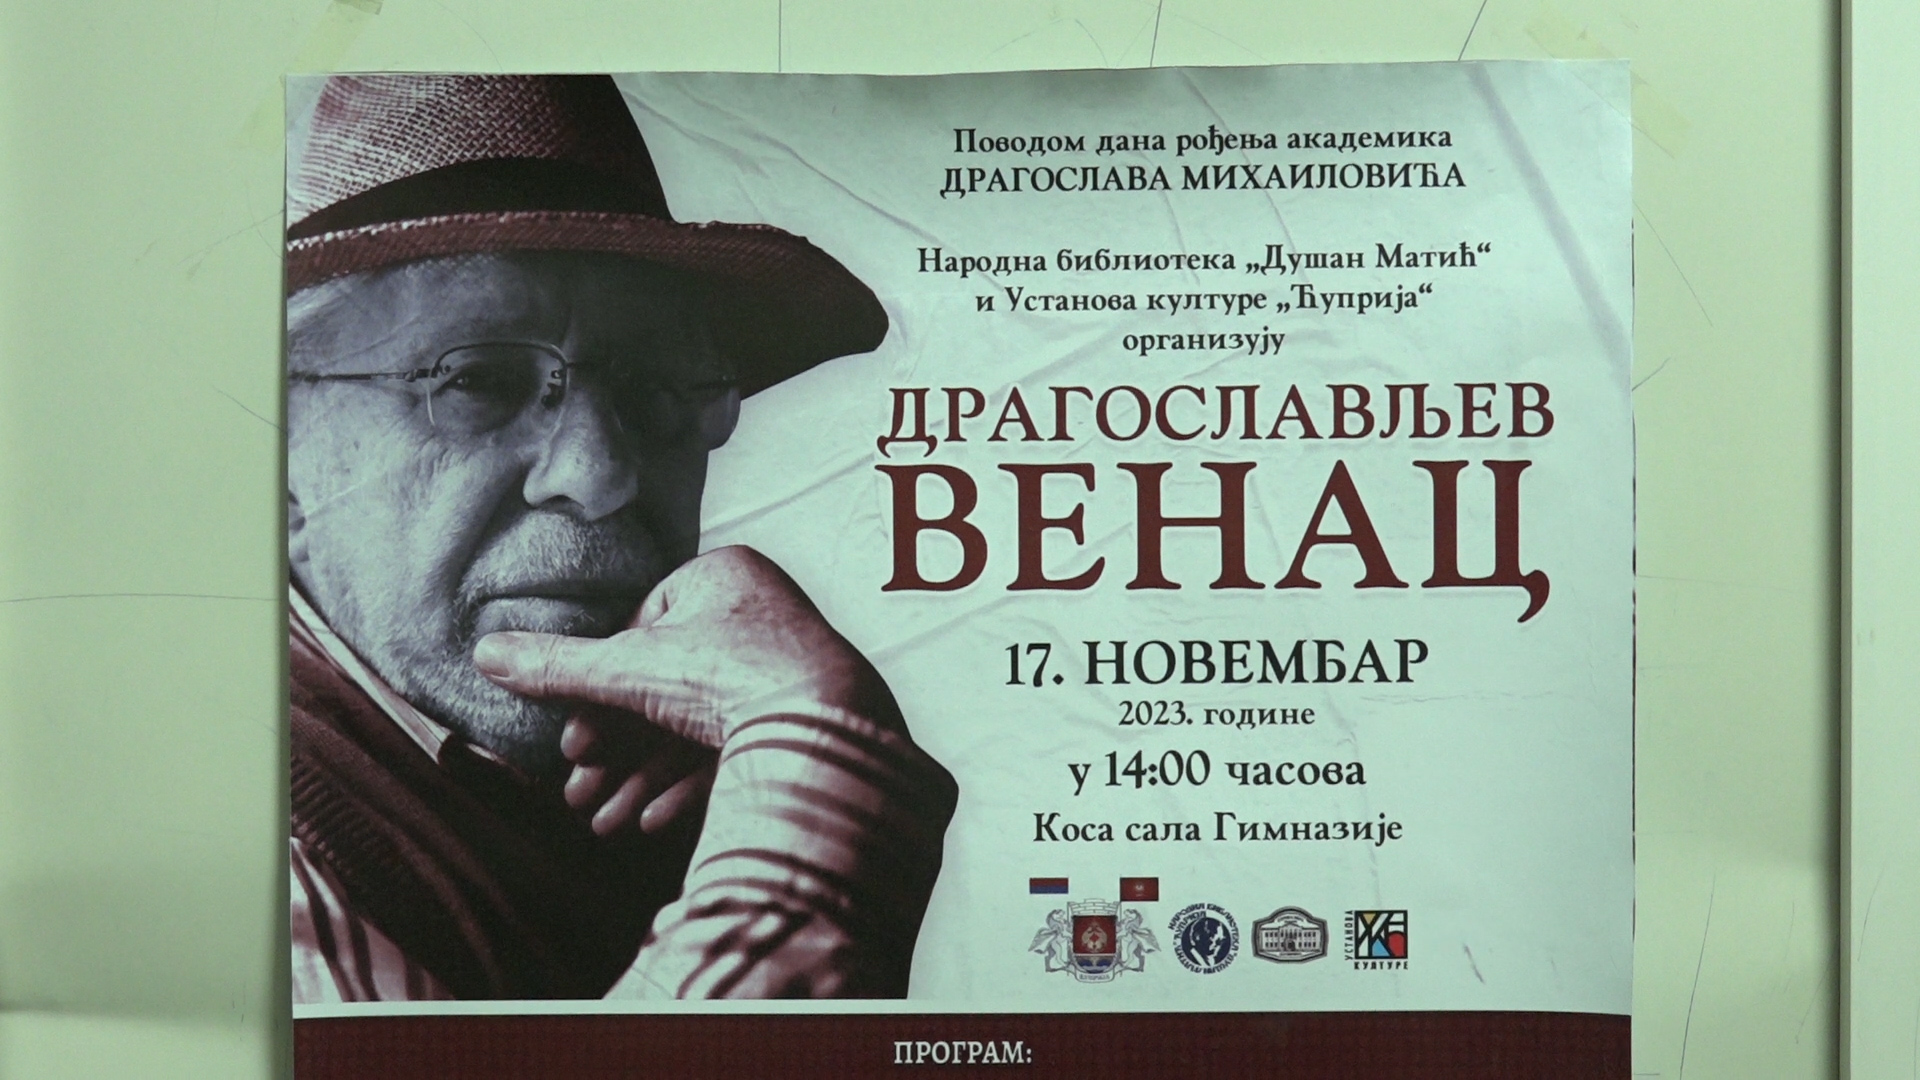 Manifestacija „Dragoslavljev venac“ književniku Dragoslavu Mihailoviću u čast